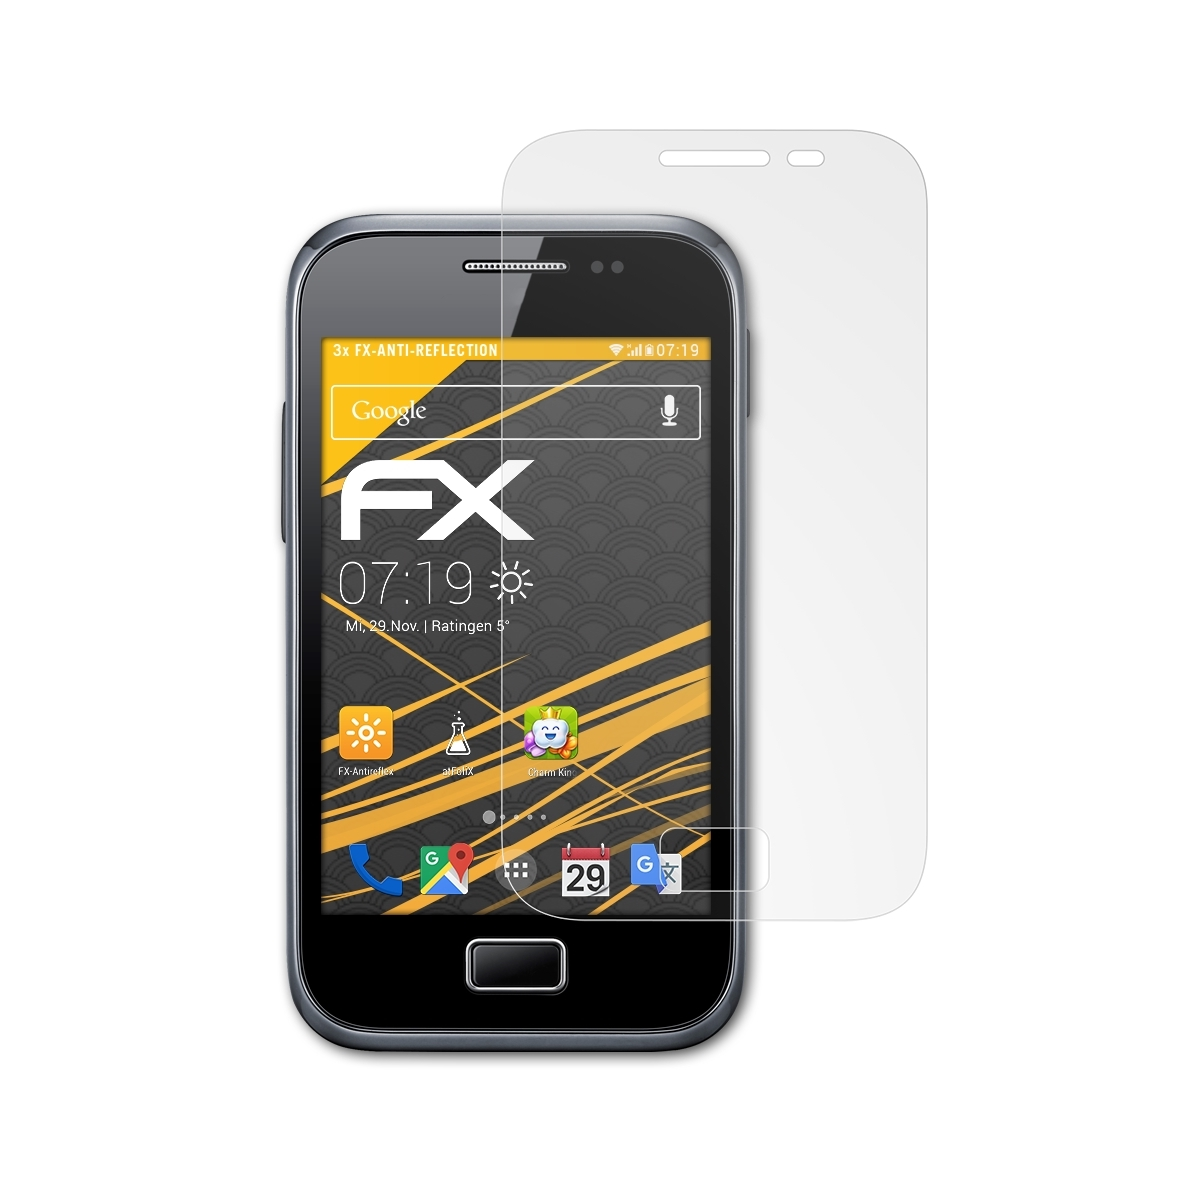 Samsung 3x Ace ATFOLIX FX-Antireflex Plus Displayschutz(für (GT-S7500)) Galaxy